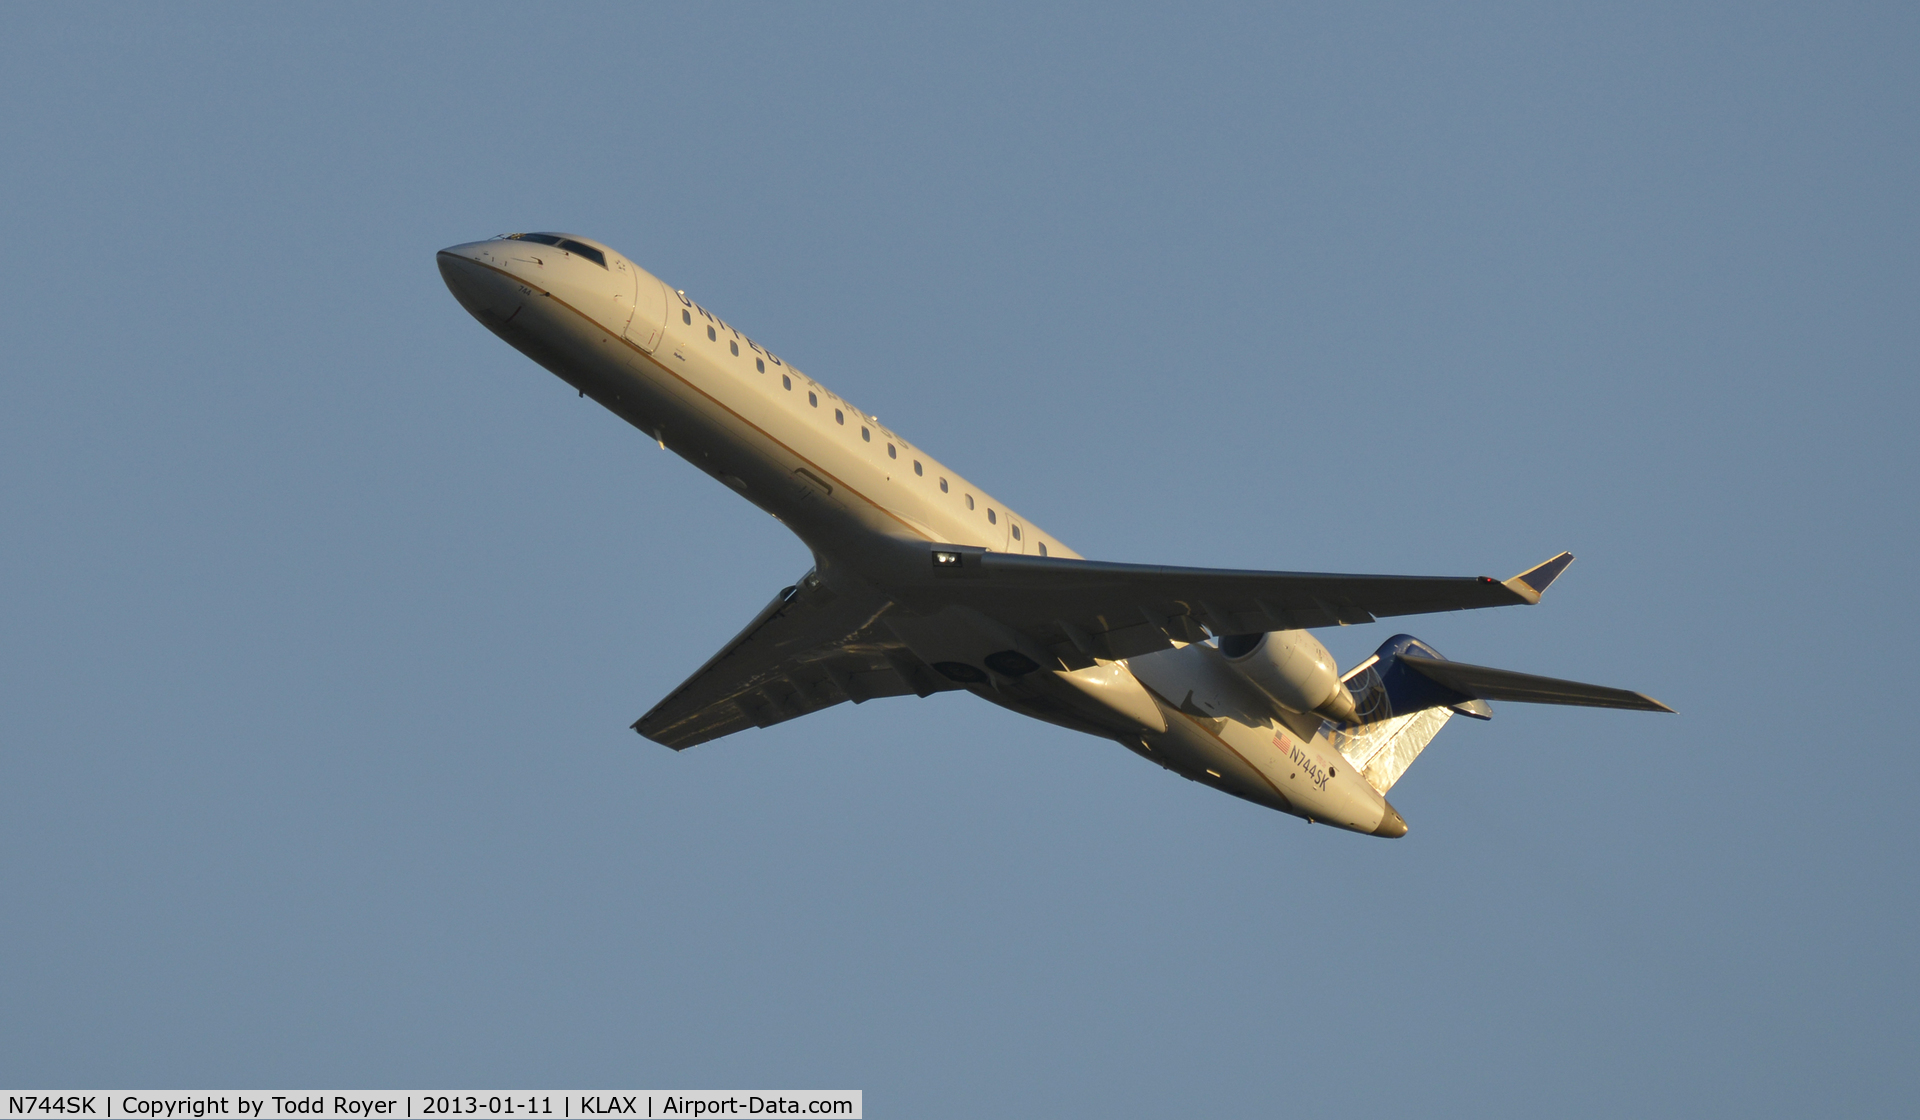 N744SK, 2005 Bombardier CRJ-701 (CL-600-2C10) Regional Jet C/N 10200, Departing LAX